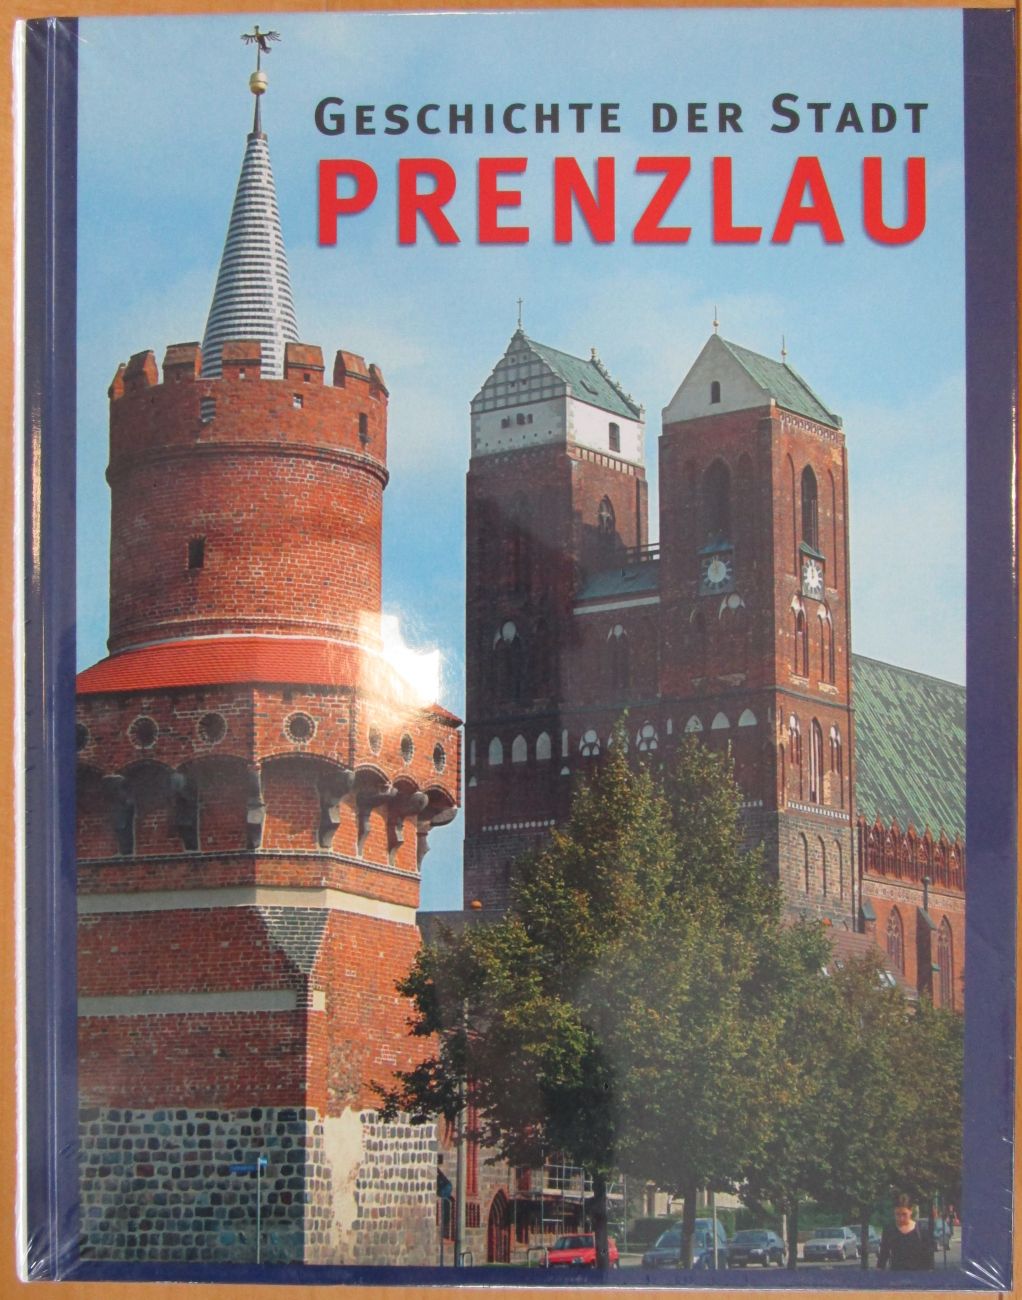 Geschichte der Stadt Prenzlau.jpg